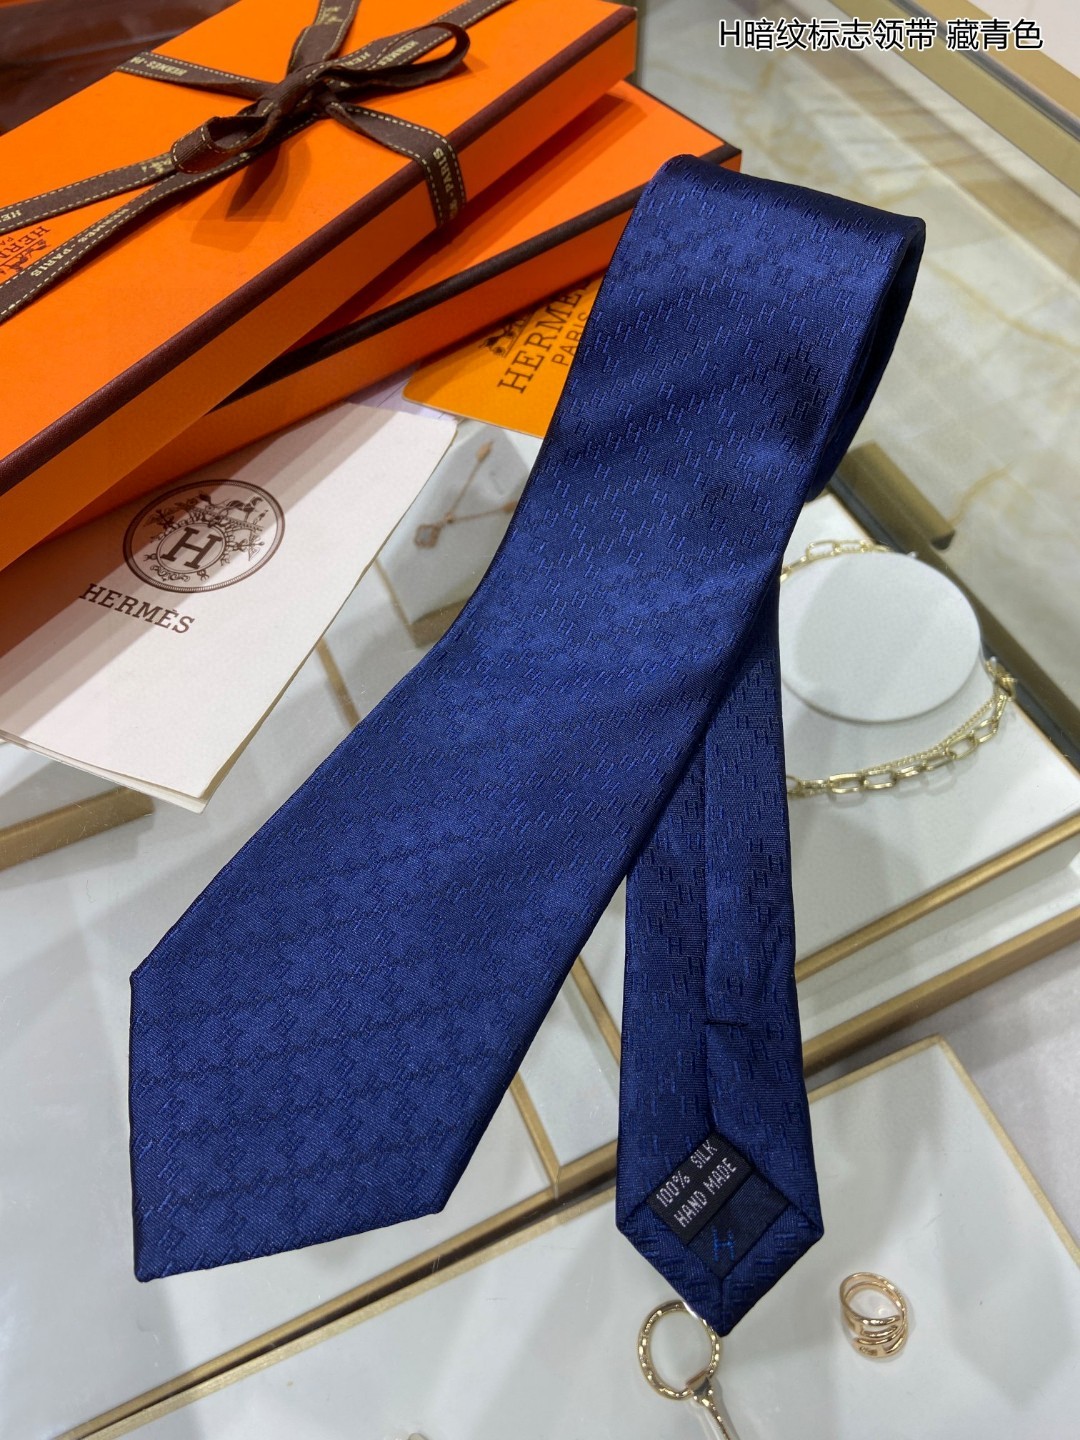 男士新款领带系列H暗纹标志领带稀有H家每年都有一千条不同印花的领带面世从最初的多以几何图案表现骑术活动为